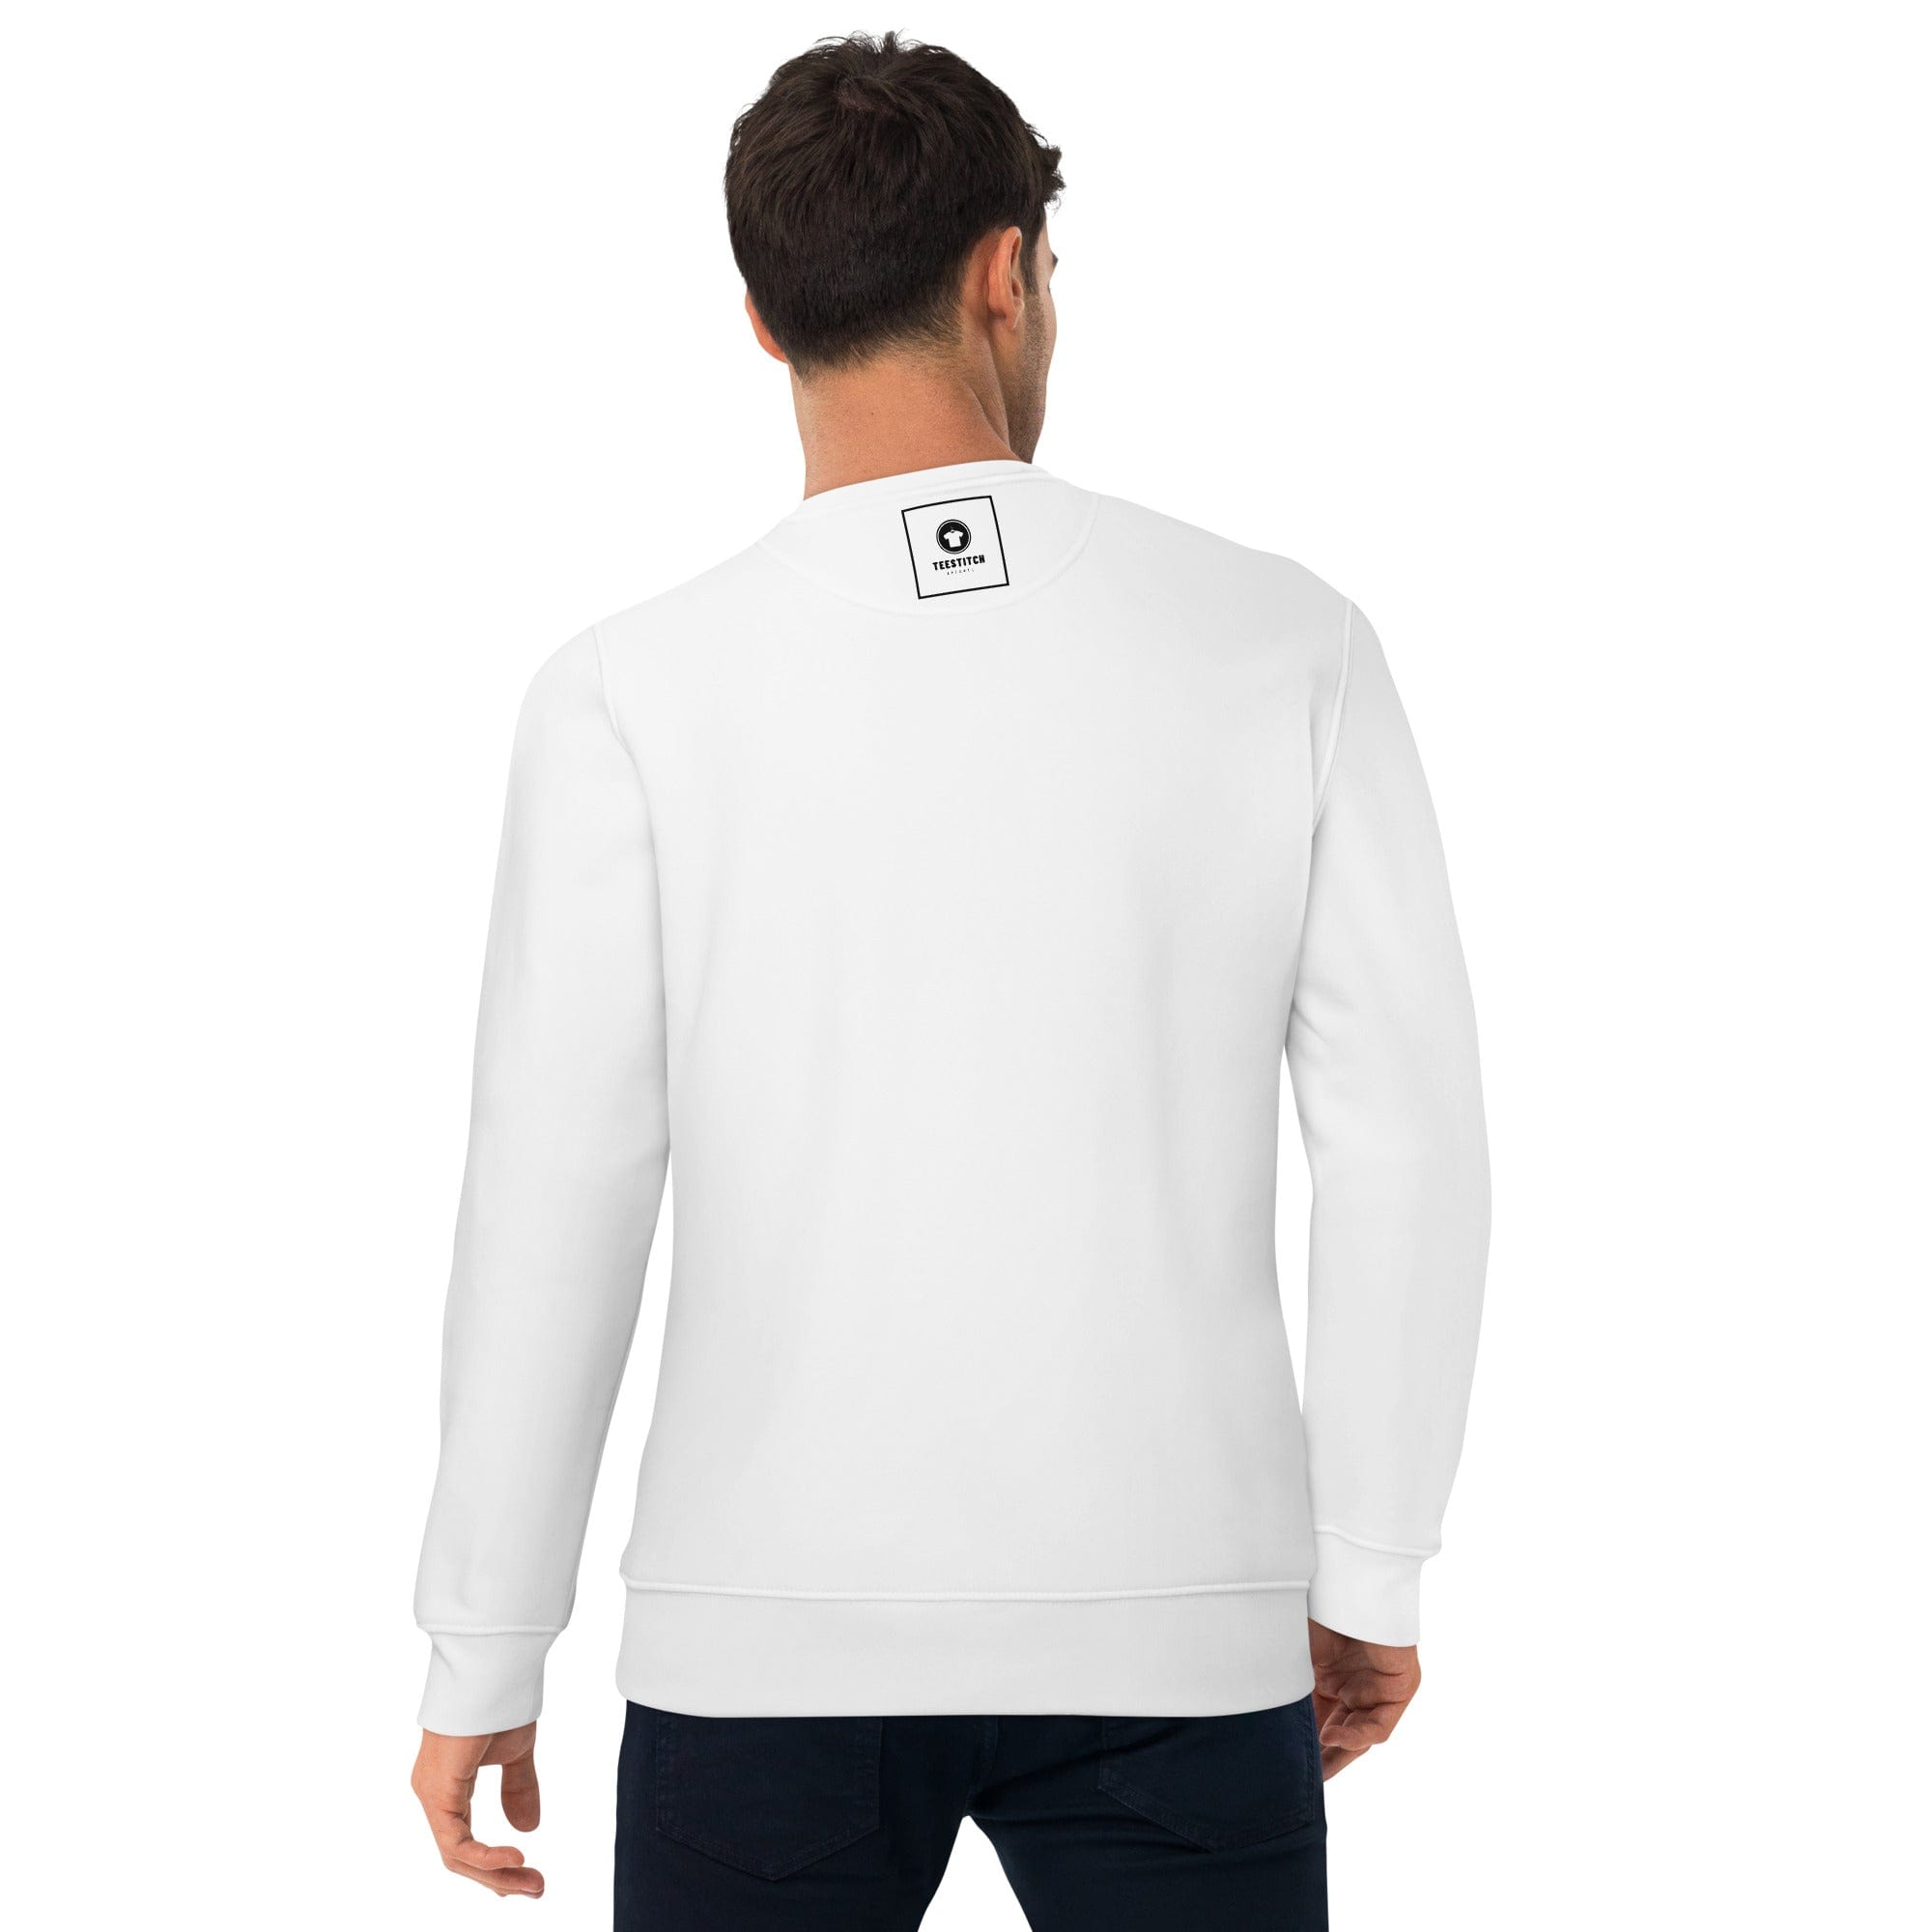 Kunoichi - Unisex Sweatshirt || TeeStitch Apparel Sweatshirt image